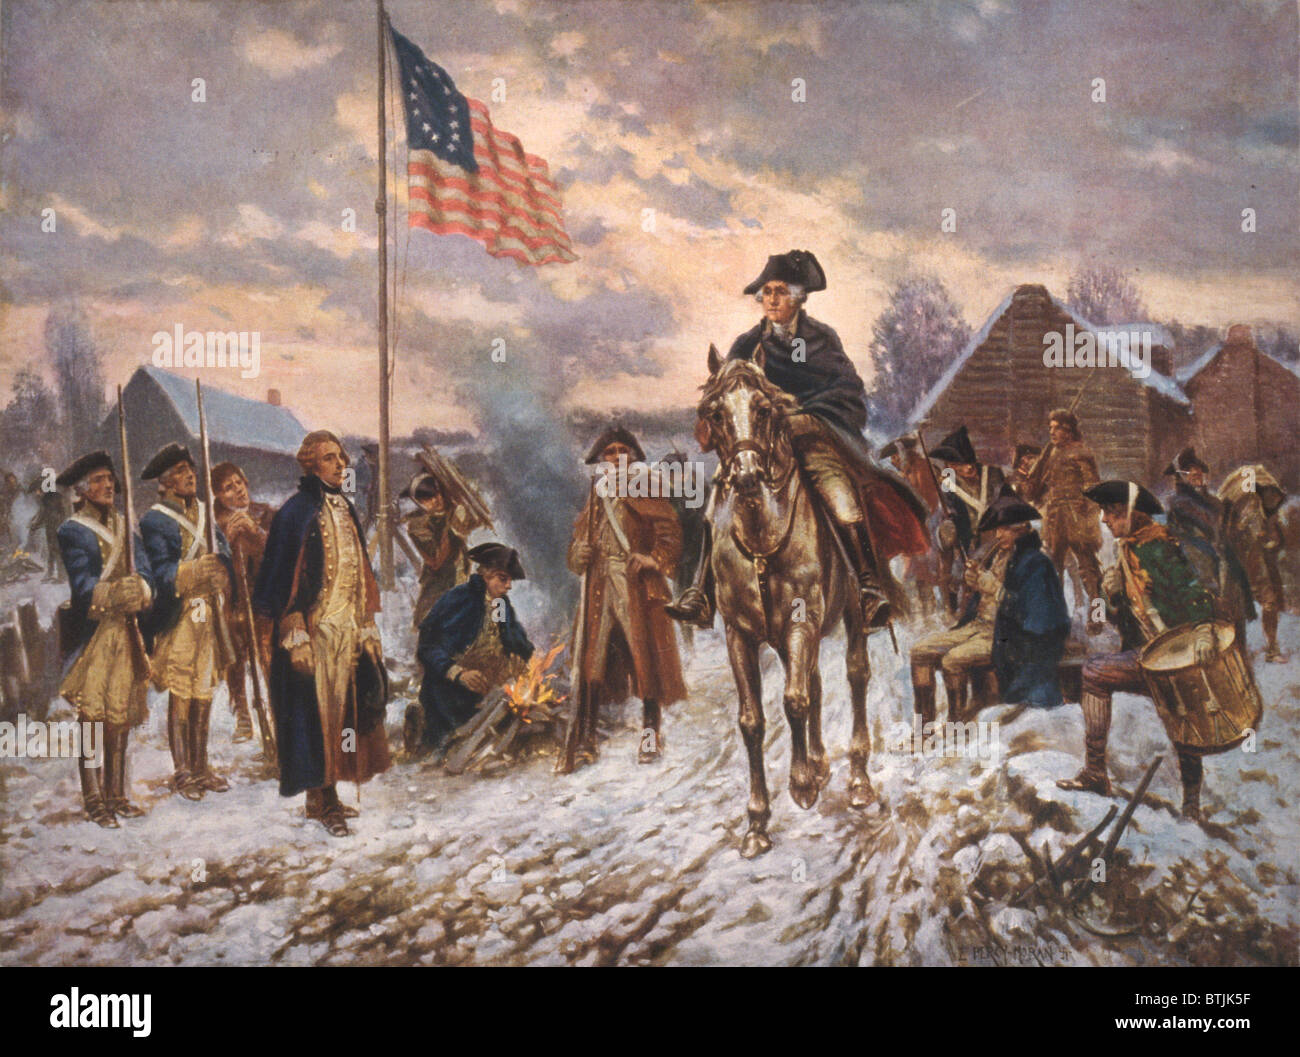 La Révolution américaine, George Washington à Valley Forge, le président George Washington à cheval dans la neige à Valley Forge, par Percy Moran, vers 1911. Banque D'Images